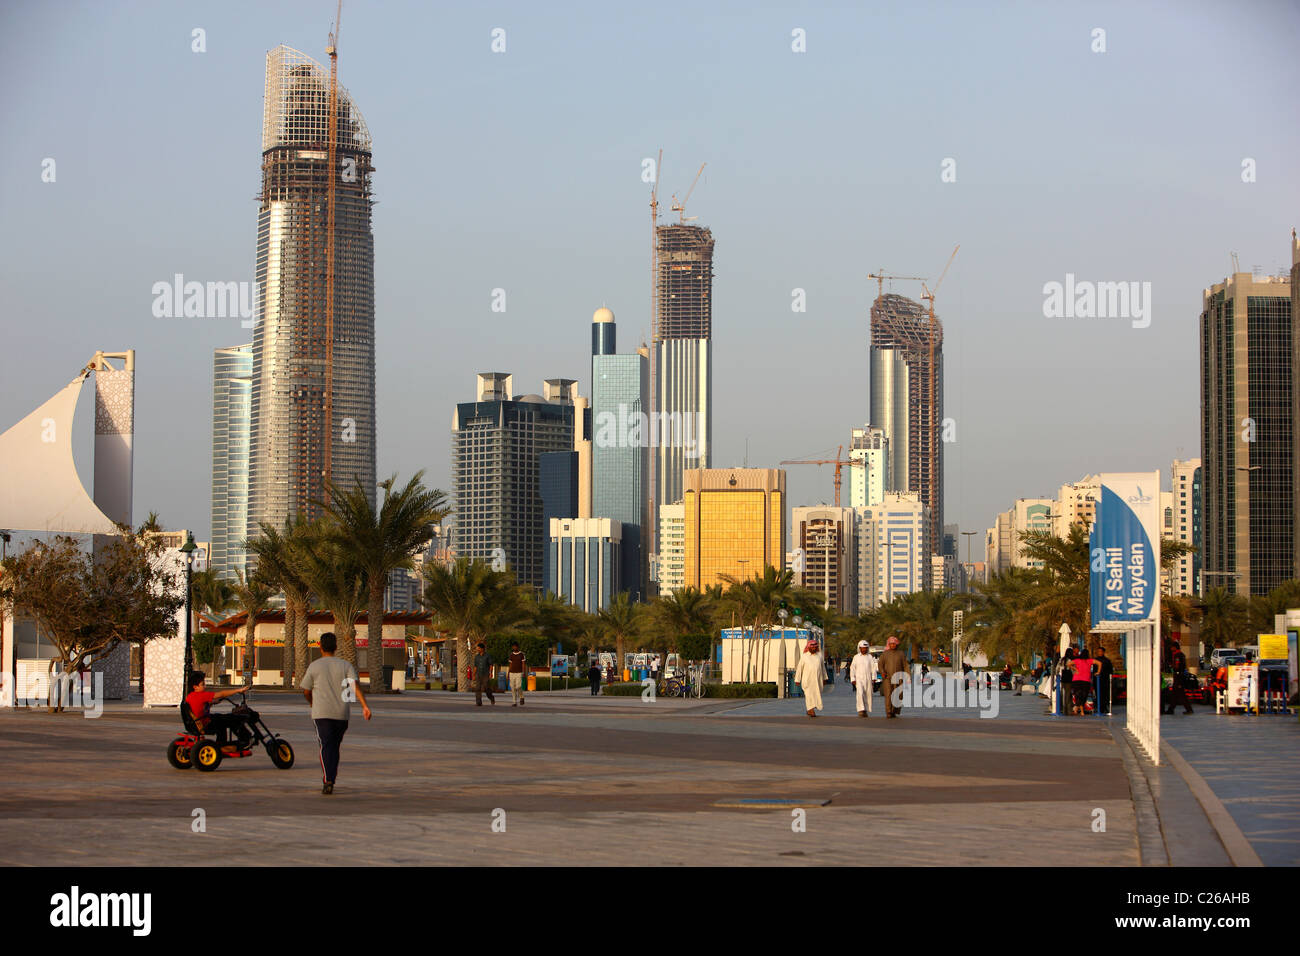 Skyline of Abu Dhabi, capital of United Arab Emirates. Stock Photo